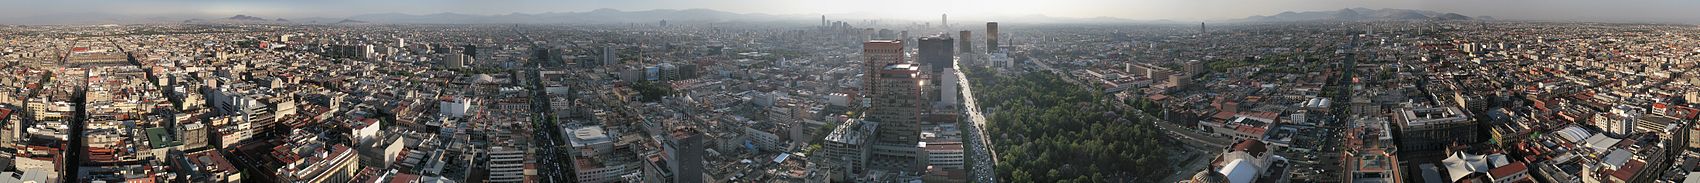 360° Panoramaansicht von Mexico City, gesehen von der Aussichtsplattform. Links der Zócalo in der historischen Altstadt, in der Bildmitte der Torre Mayor, im Vordergrund das Außenministerium und die Alameda.